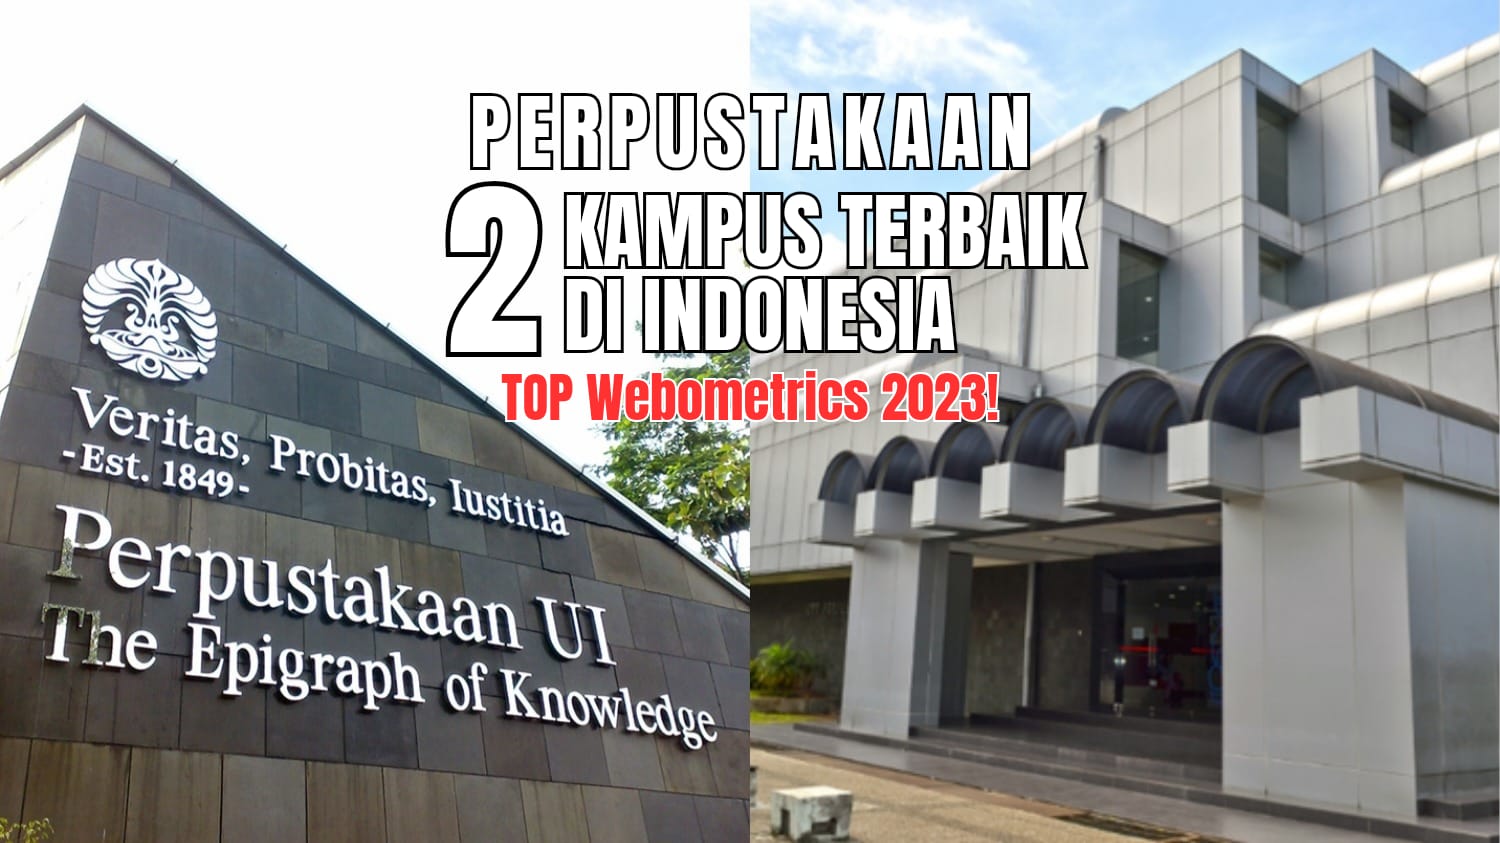 Intip Kemegahan Perpustakaan 2 Kampus Terbaik  Indonesia TOP Webometrics 2023, No 1 Mirip Mall